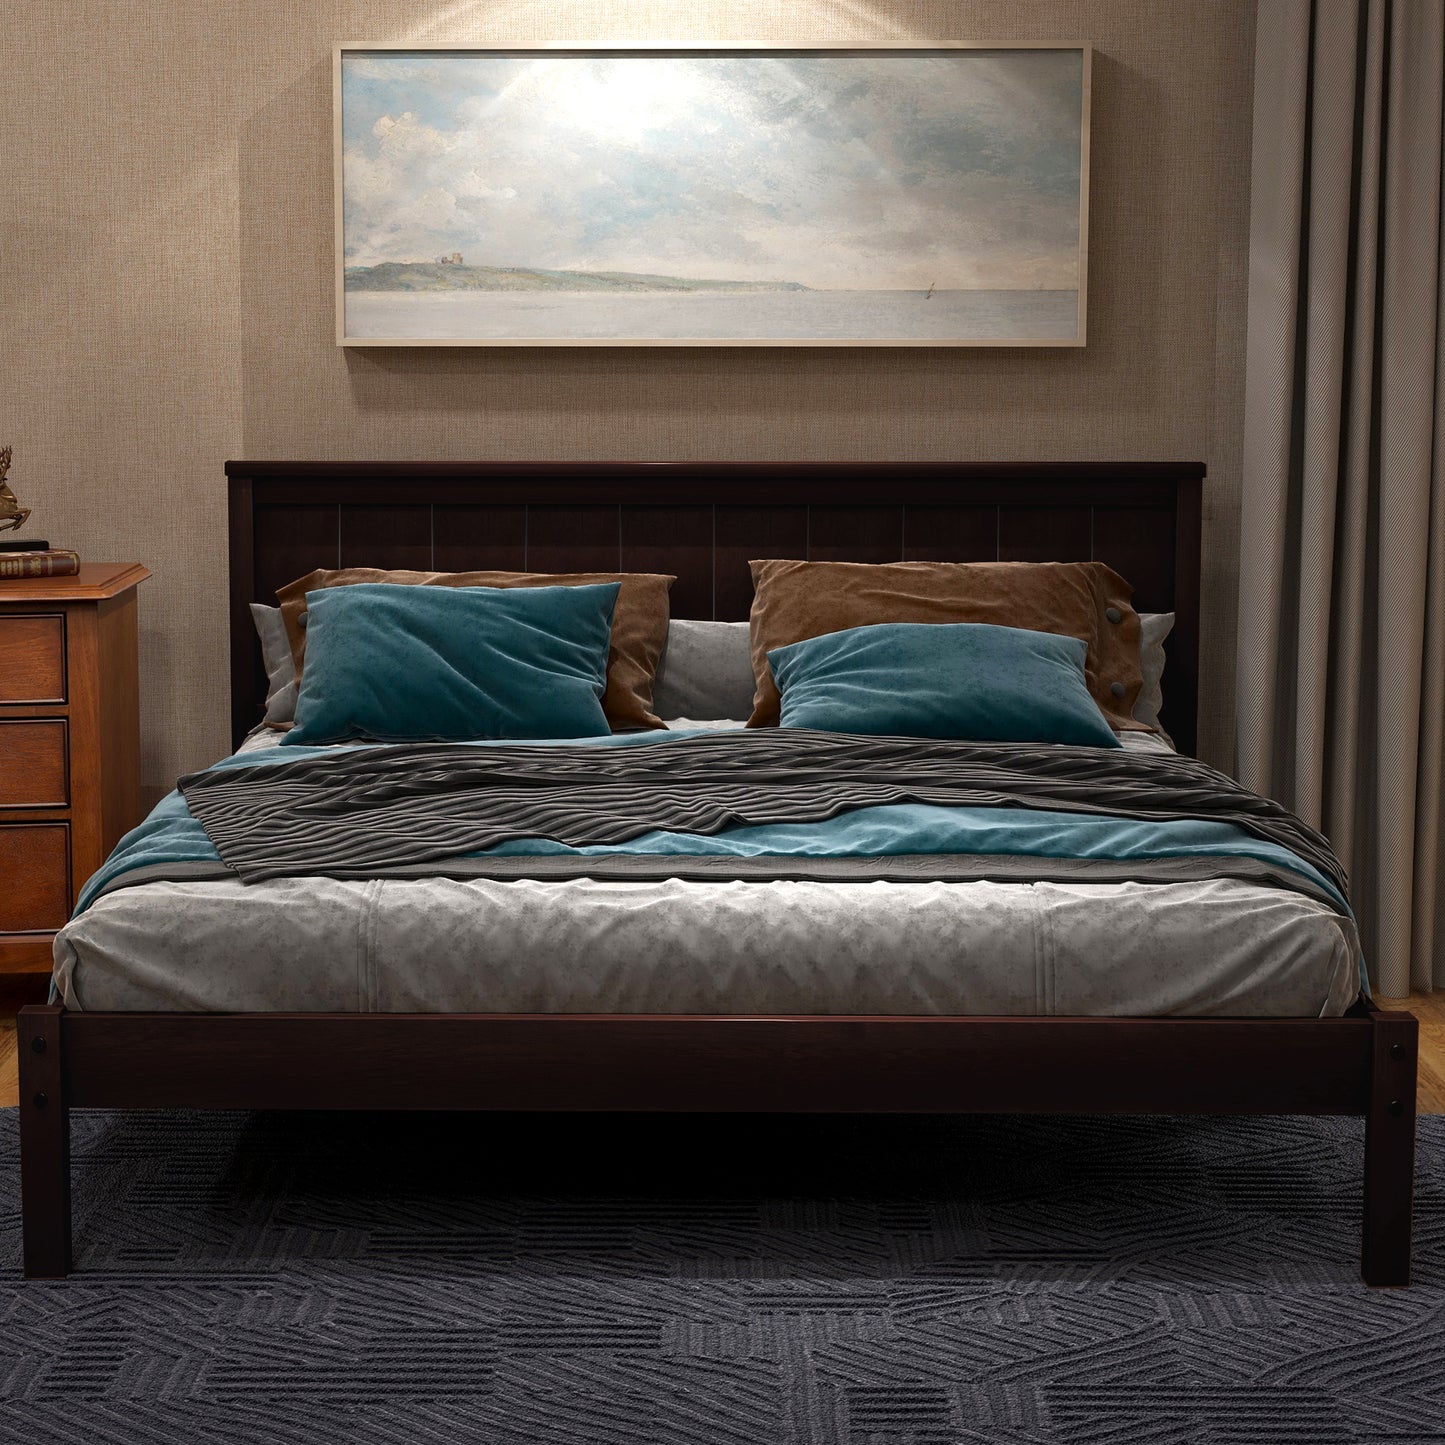 Full Platform Bed Frame, Solid Wood Bed Frame with Headboard, Full Bed Frame for Kids Adults, Full-Size Bed Frame for Bedroom, Espresso, LJ2434